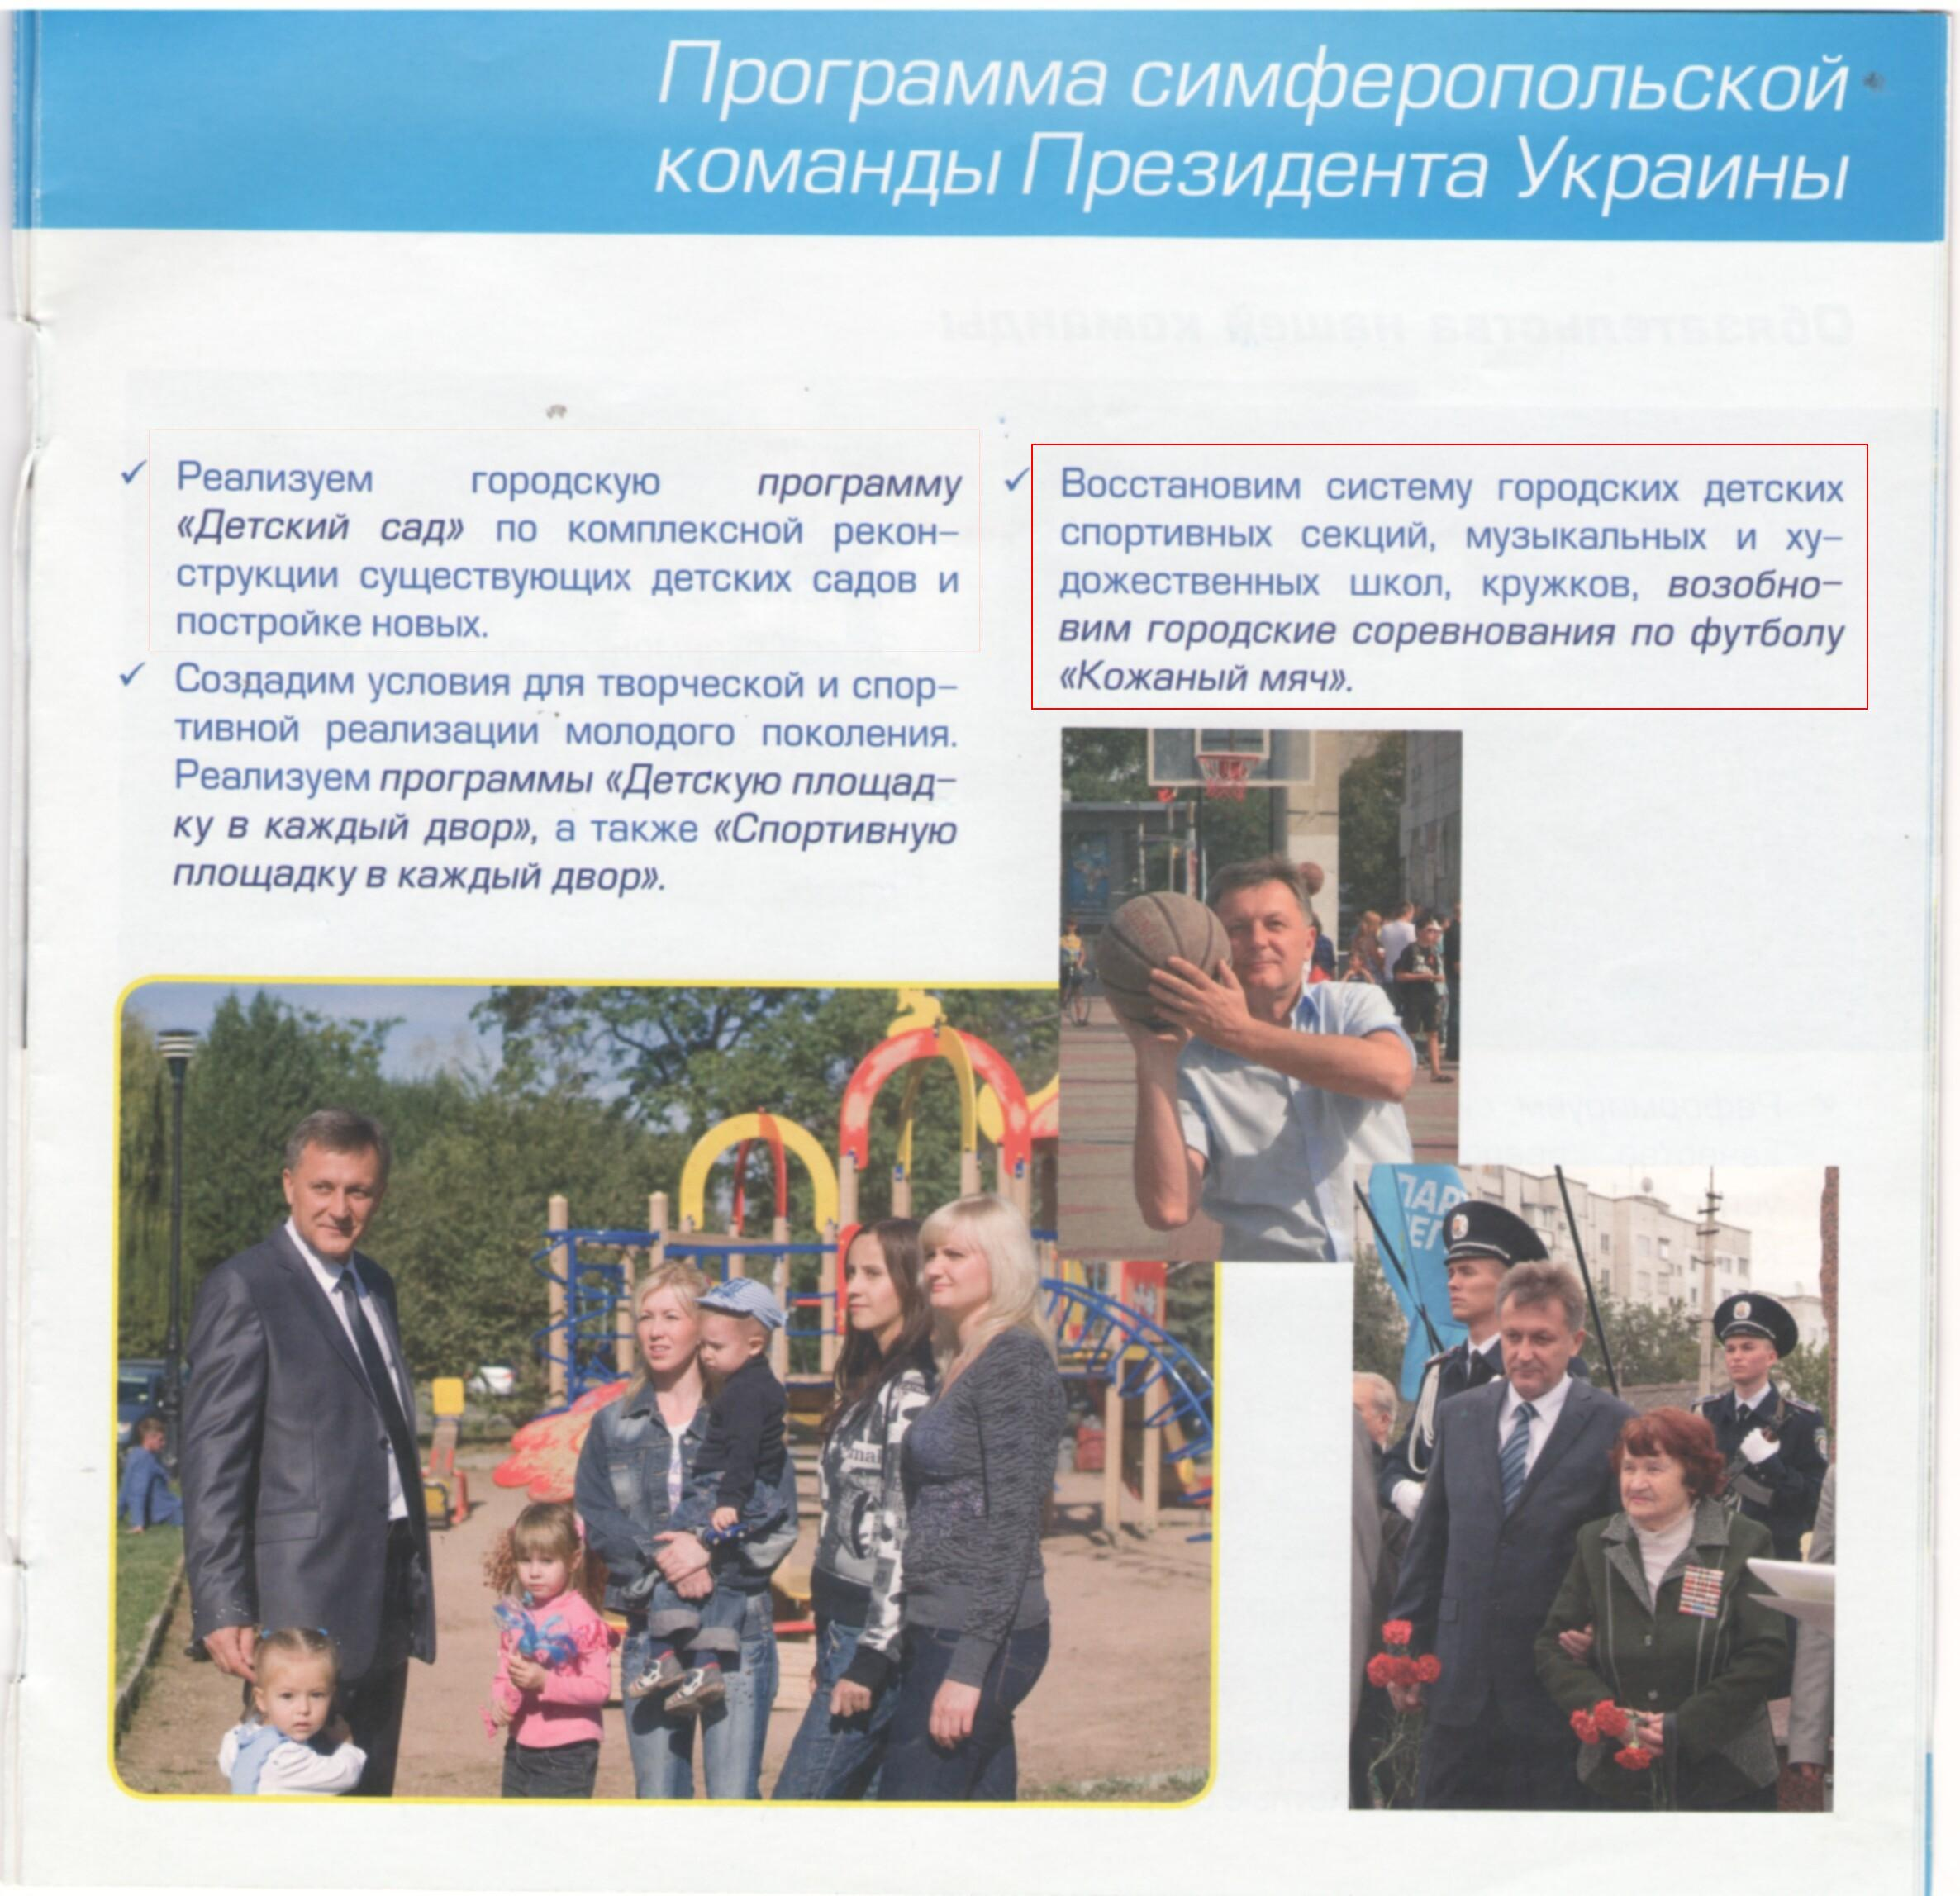 Программа кандидата на пост городского головы Симферополя Виктора Агеева